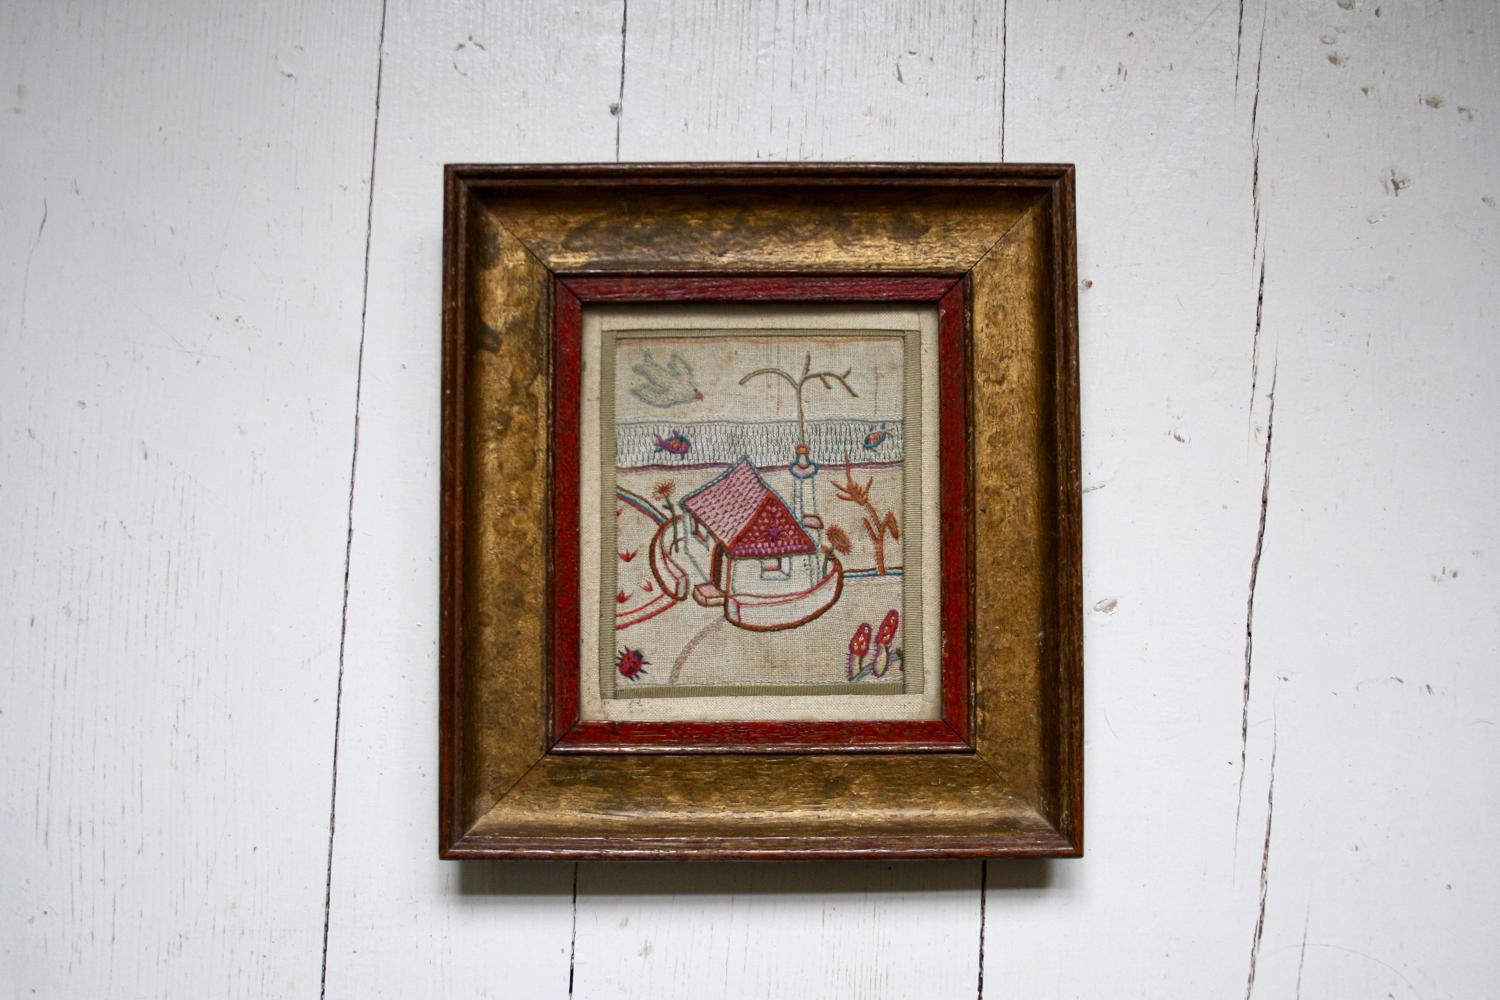 House needlework/sampler in original frame